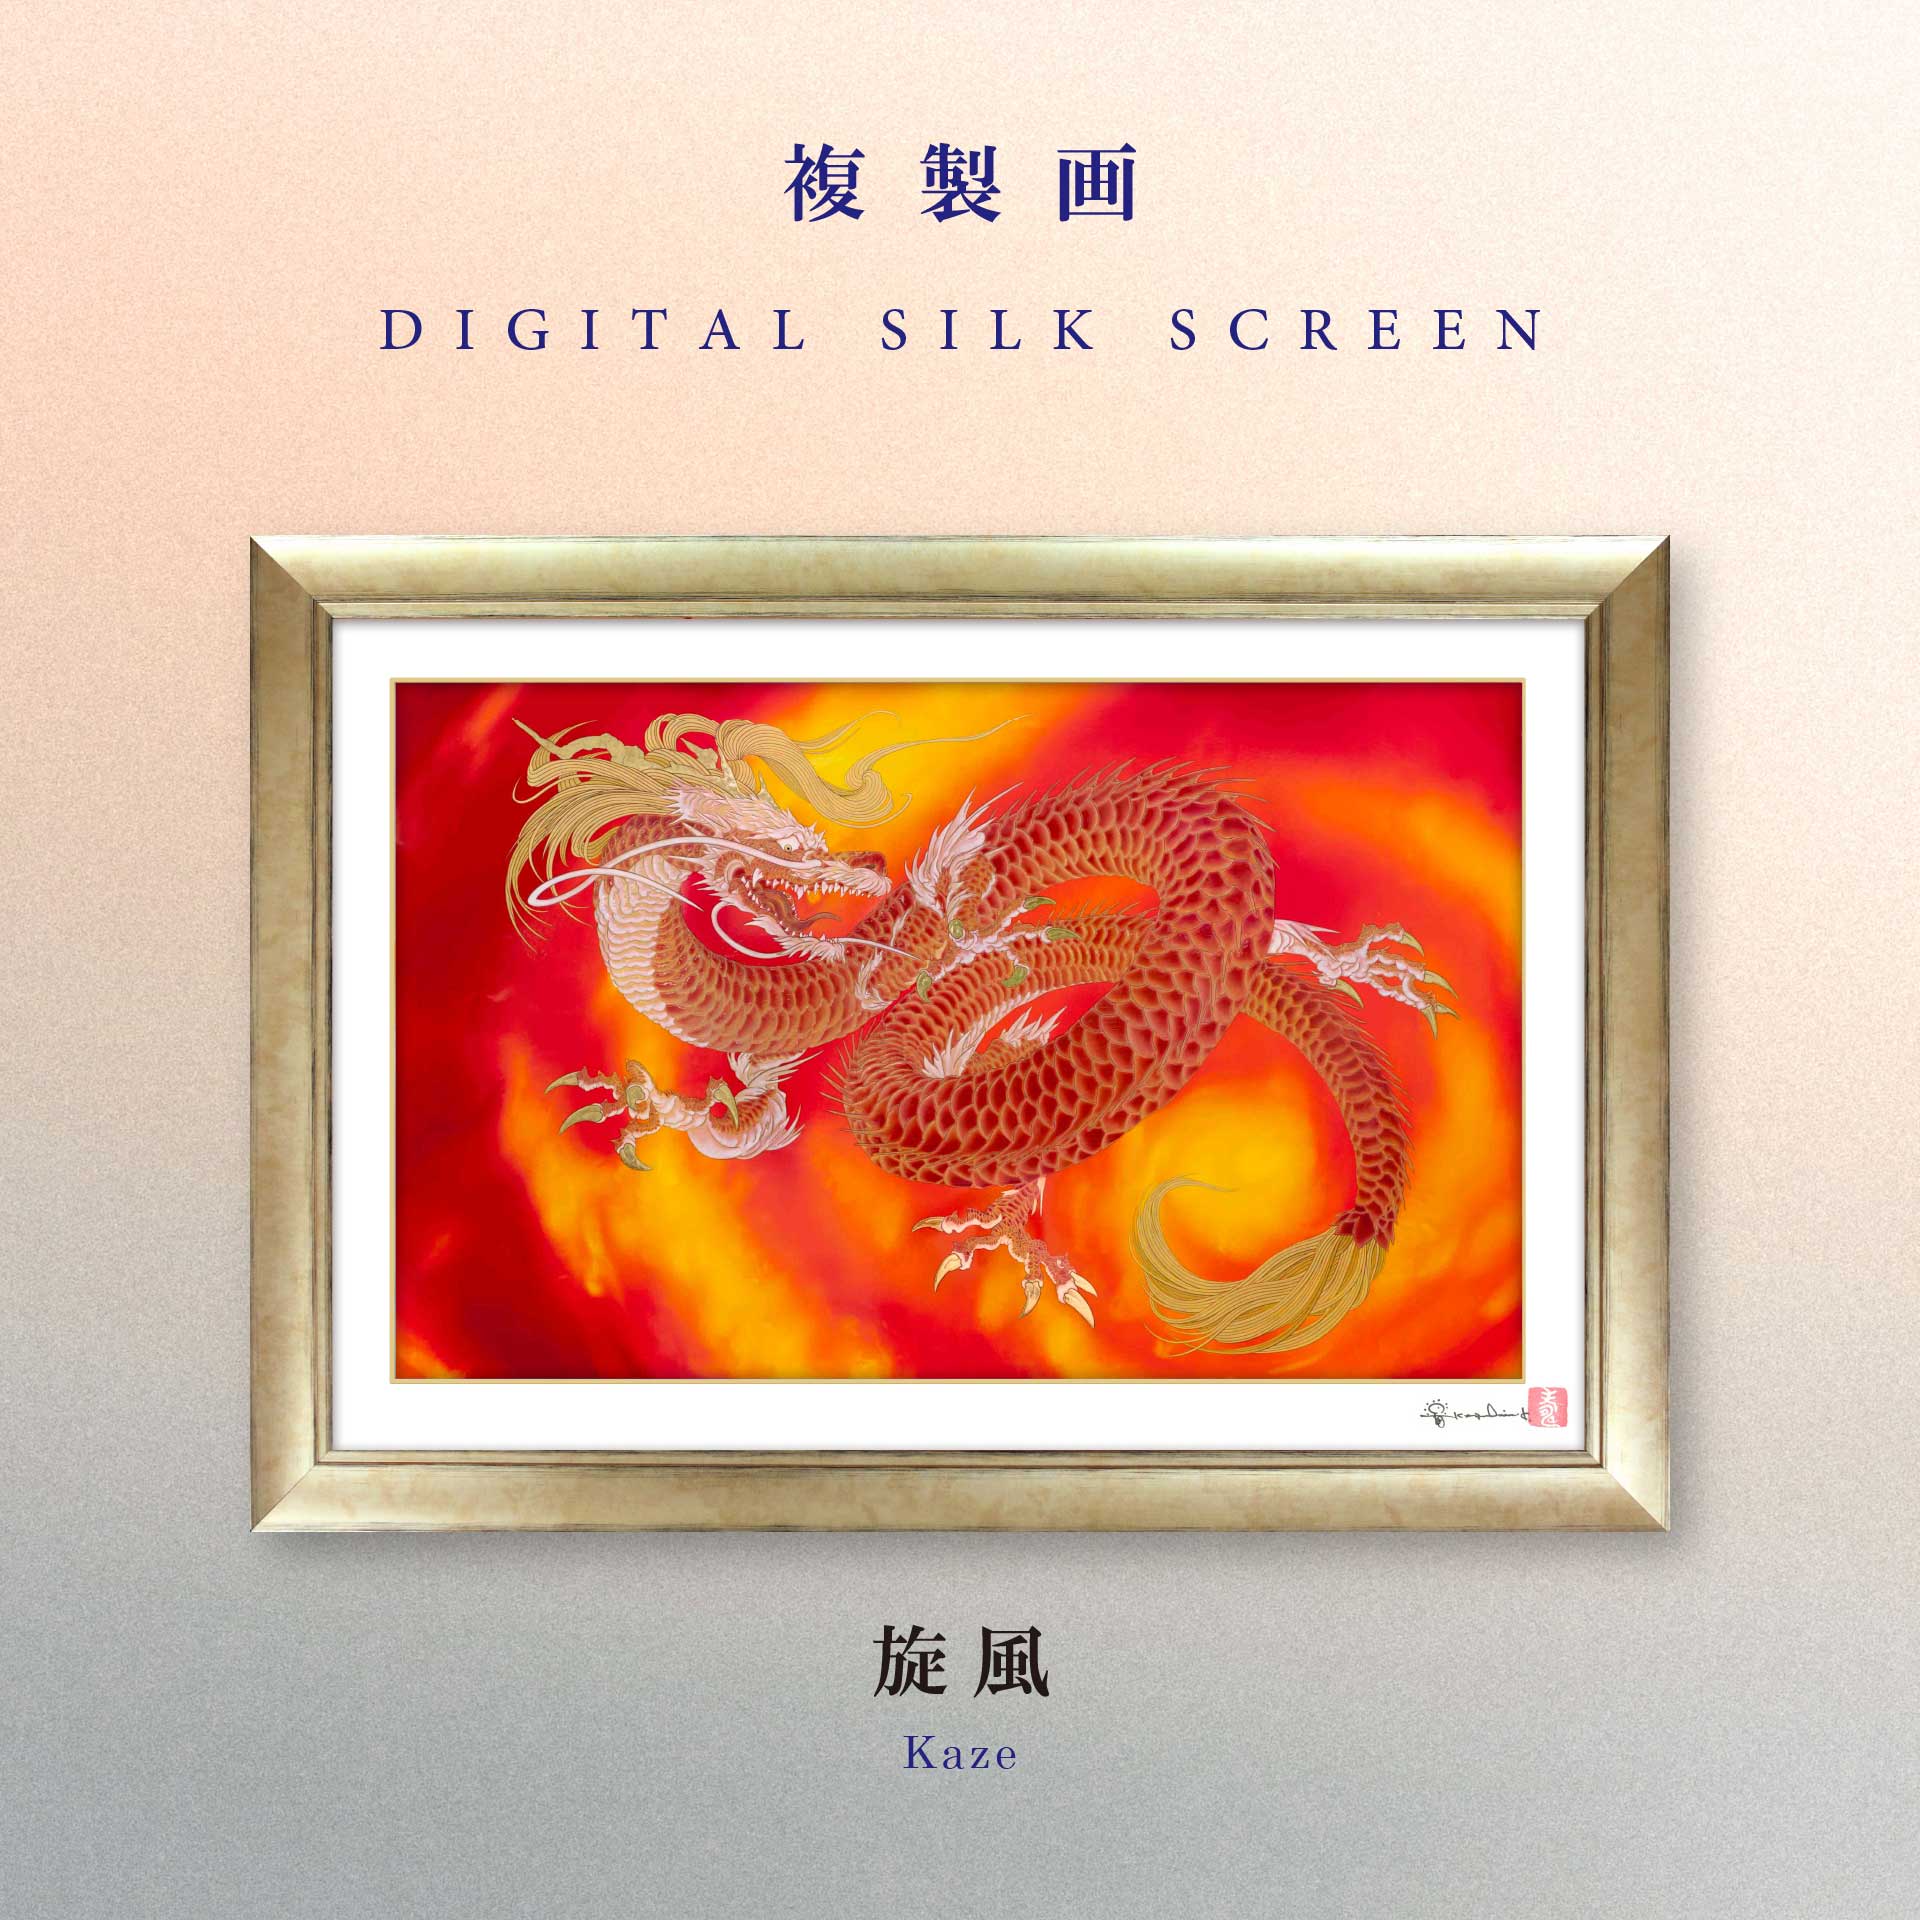 複製画・デジタルシルクスクリーン「旋風」 – 草場一壽工房 Museum Shop